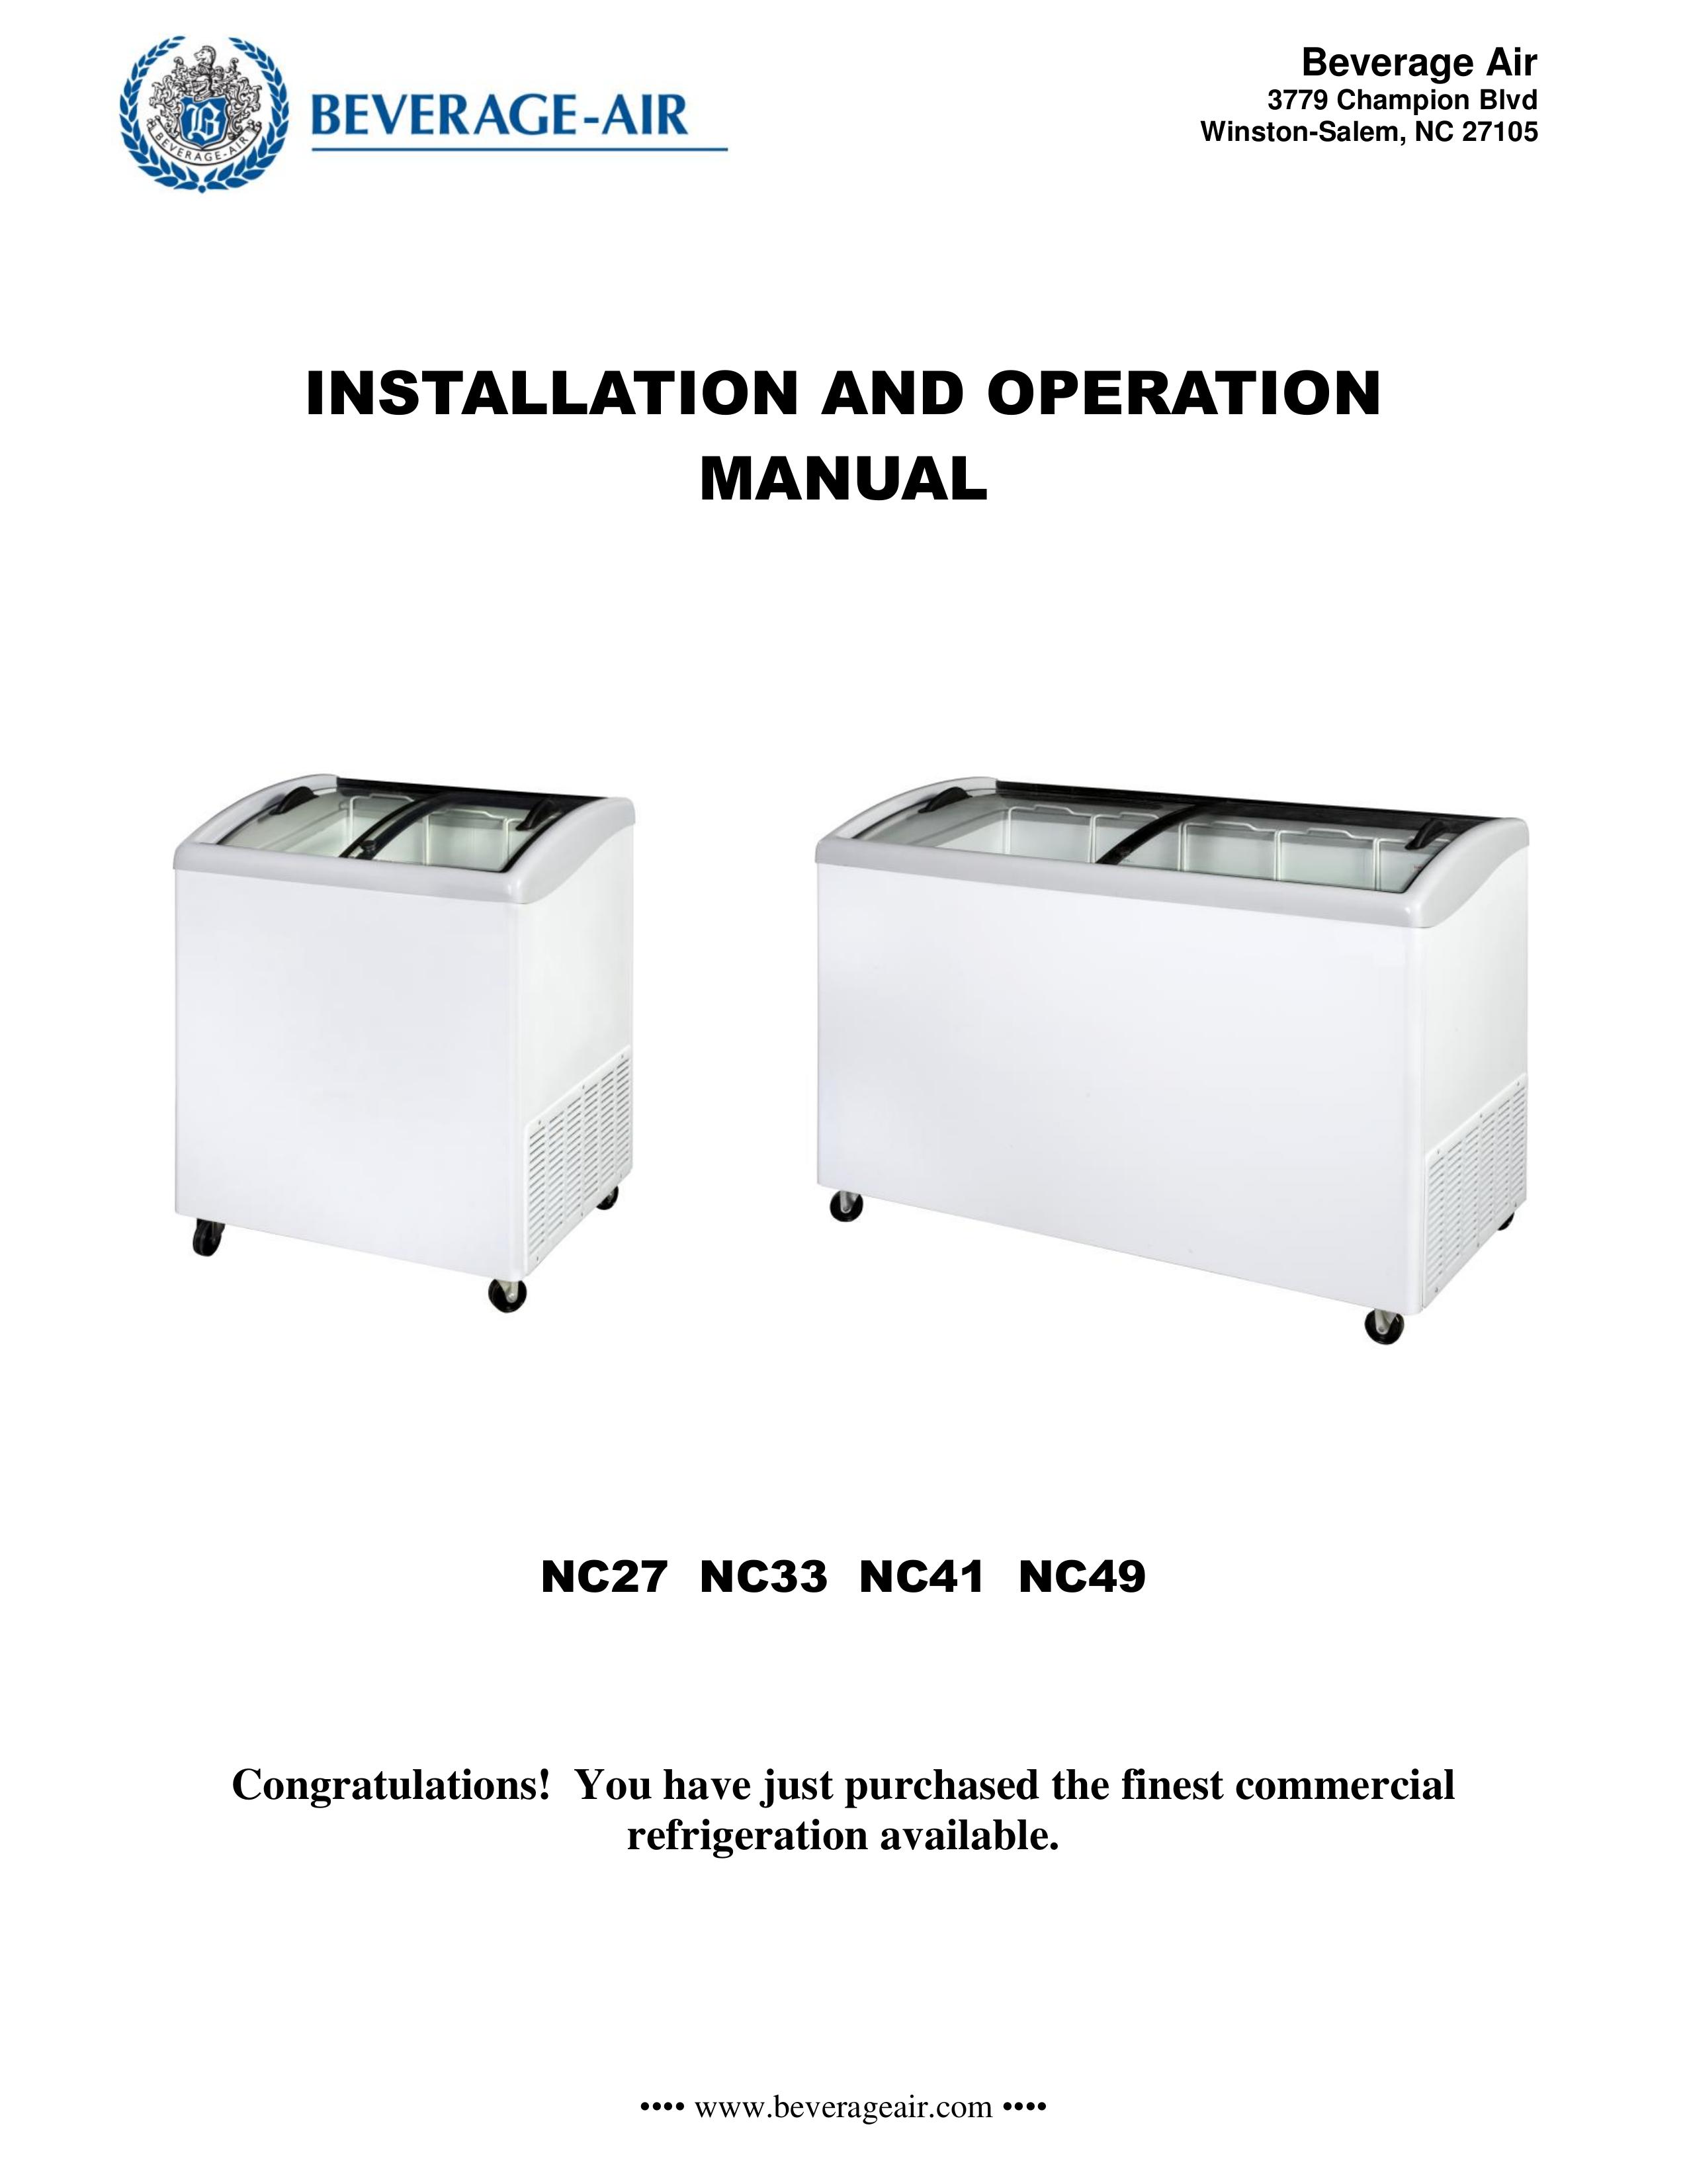 Beverage-Air NC49 Refrigerator User Manual